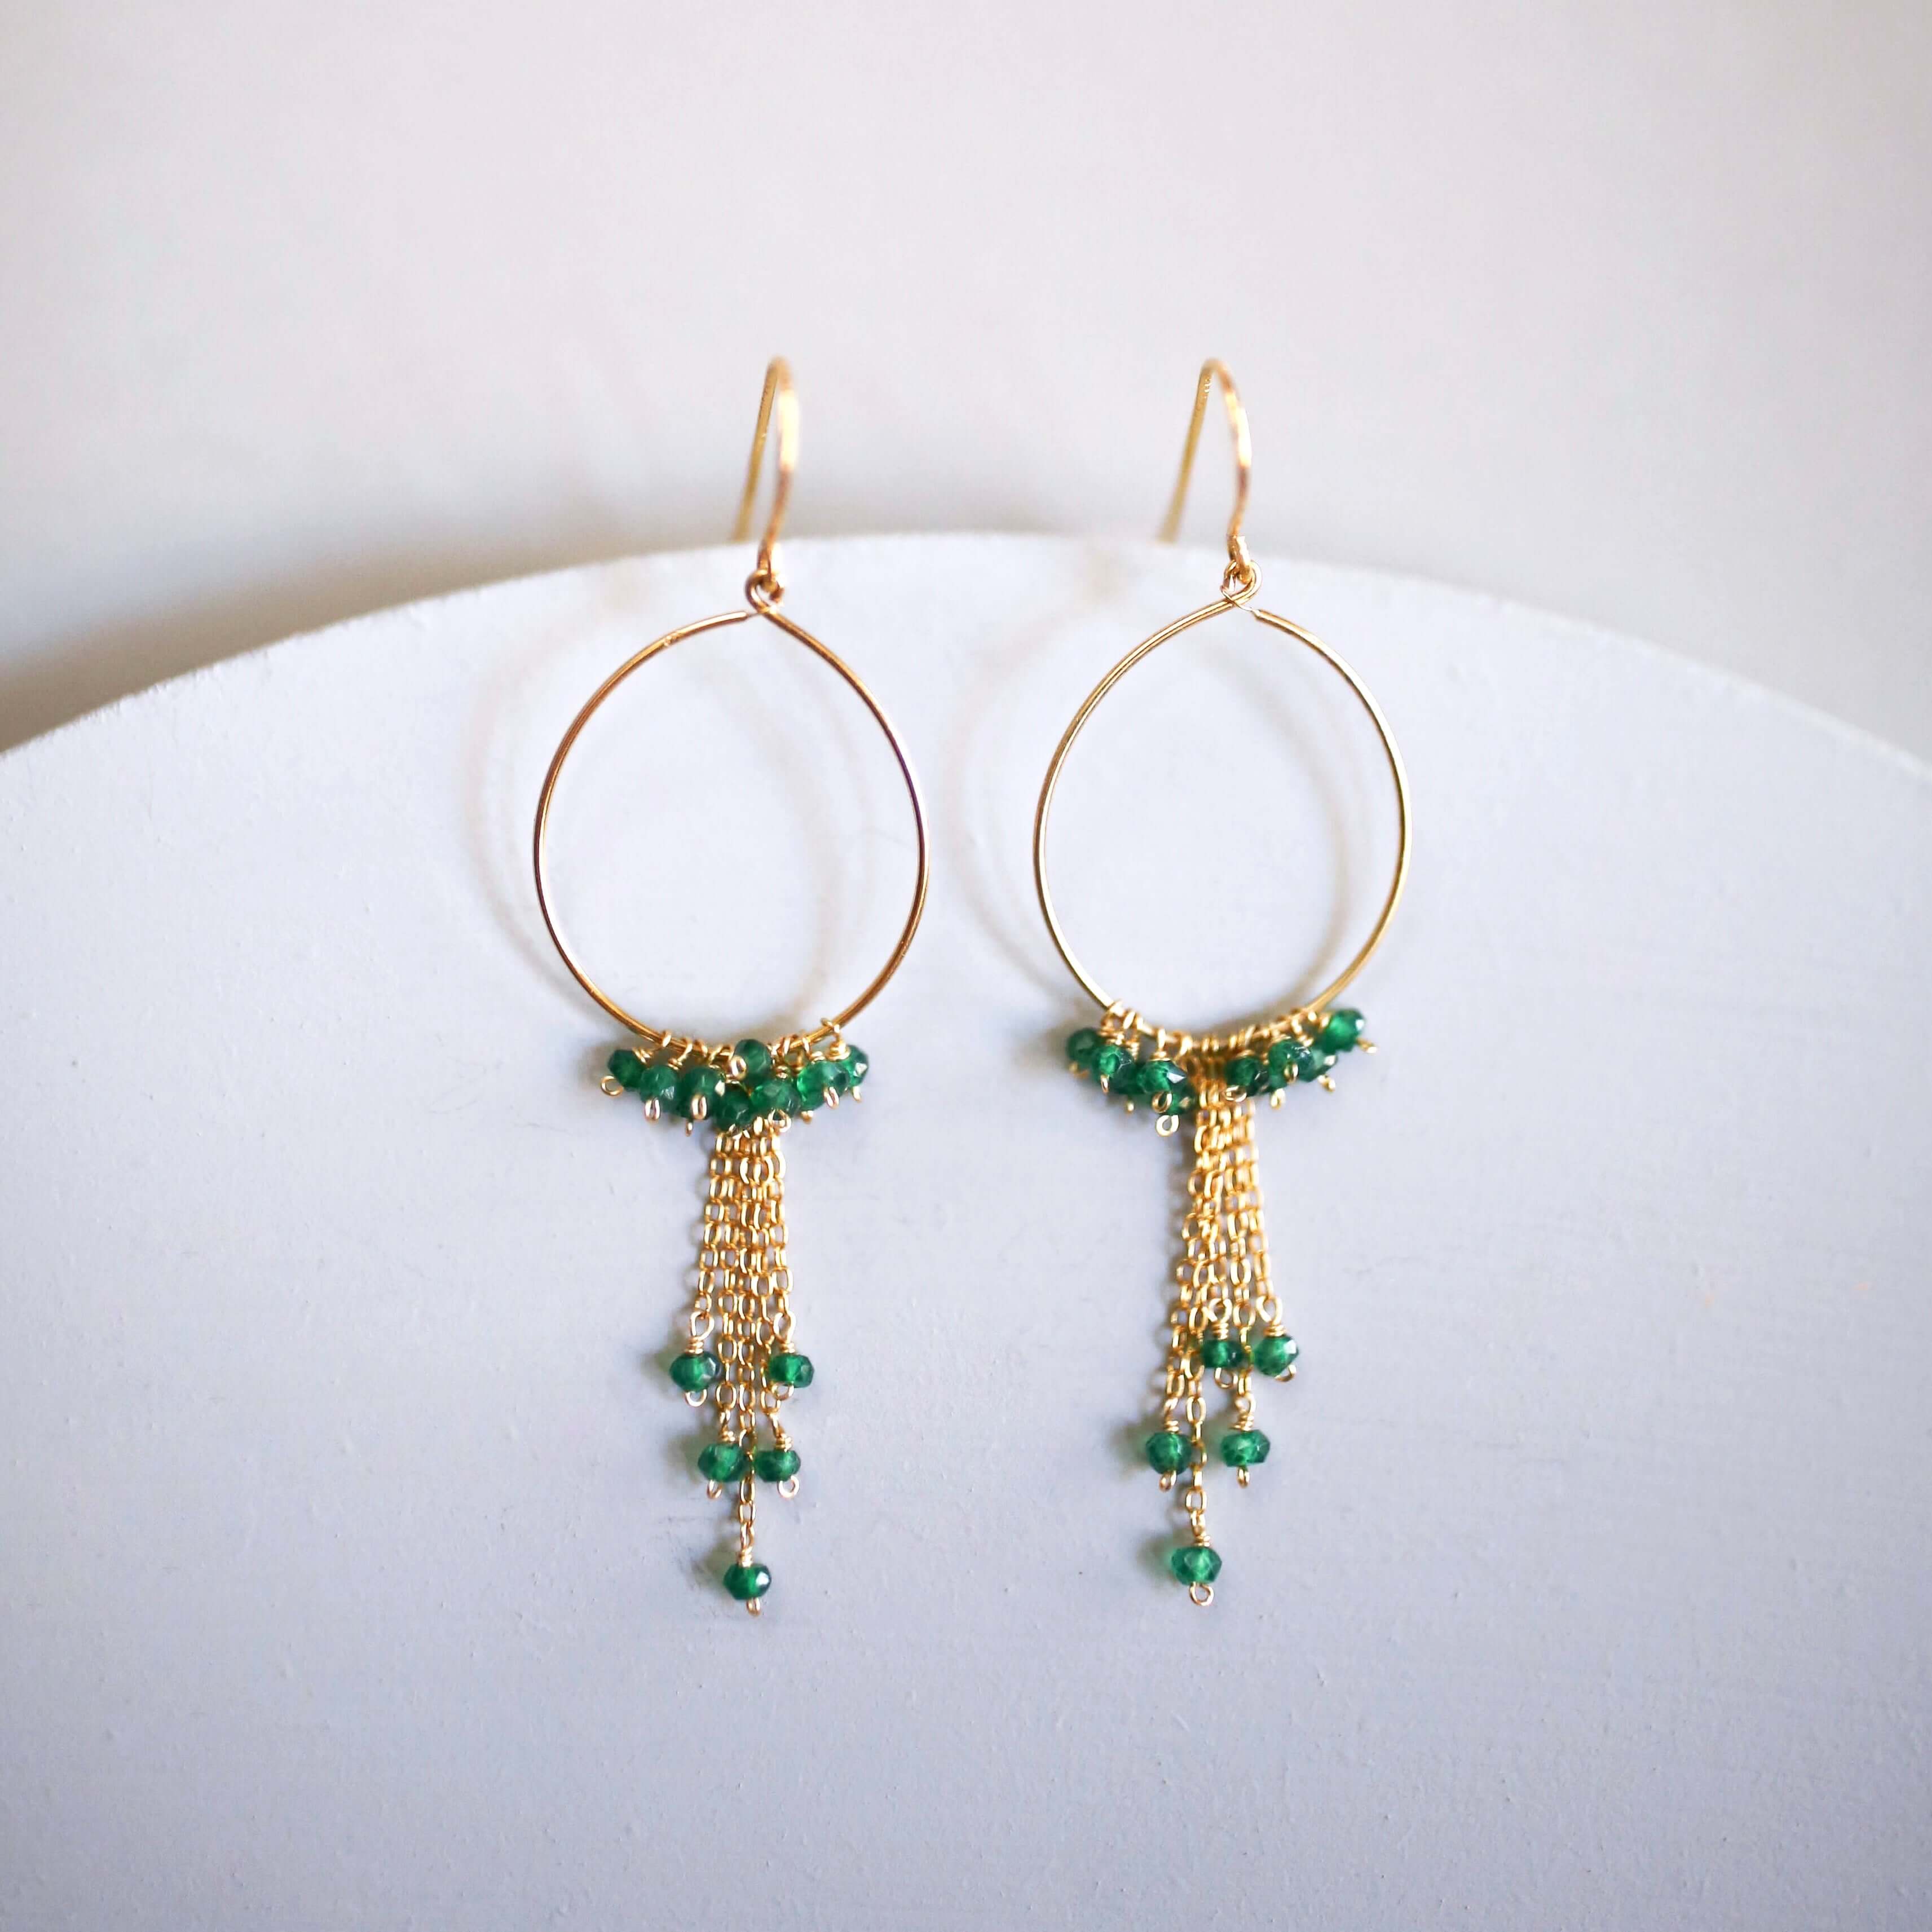 Handmade Green Apatite Swing Hoop Earrings with 14k Gold Plating